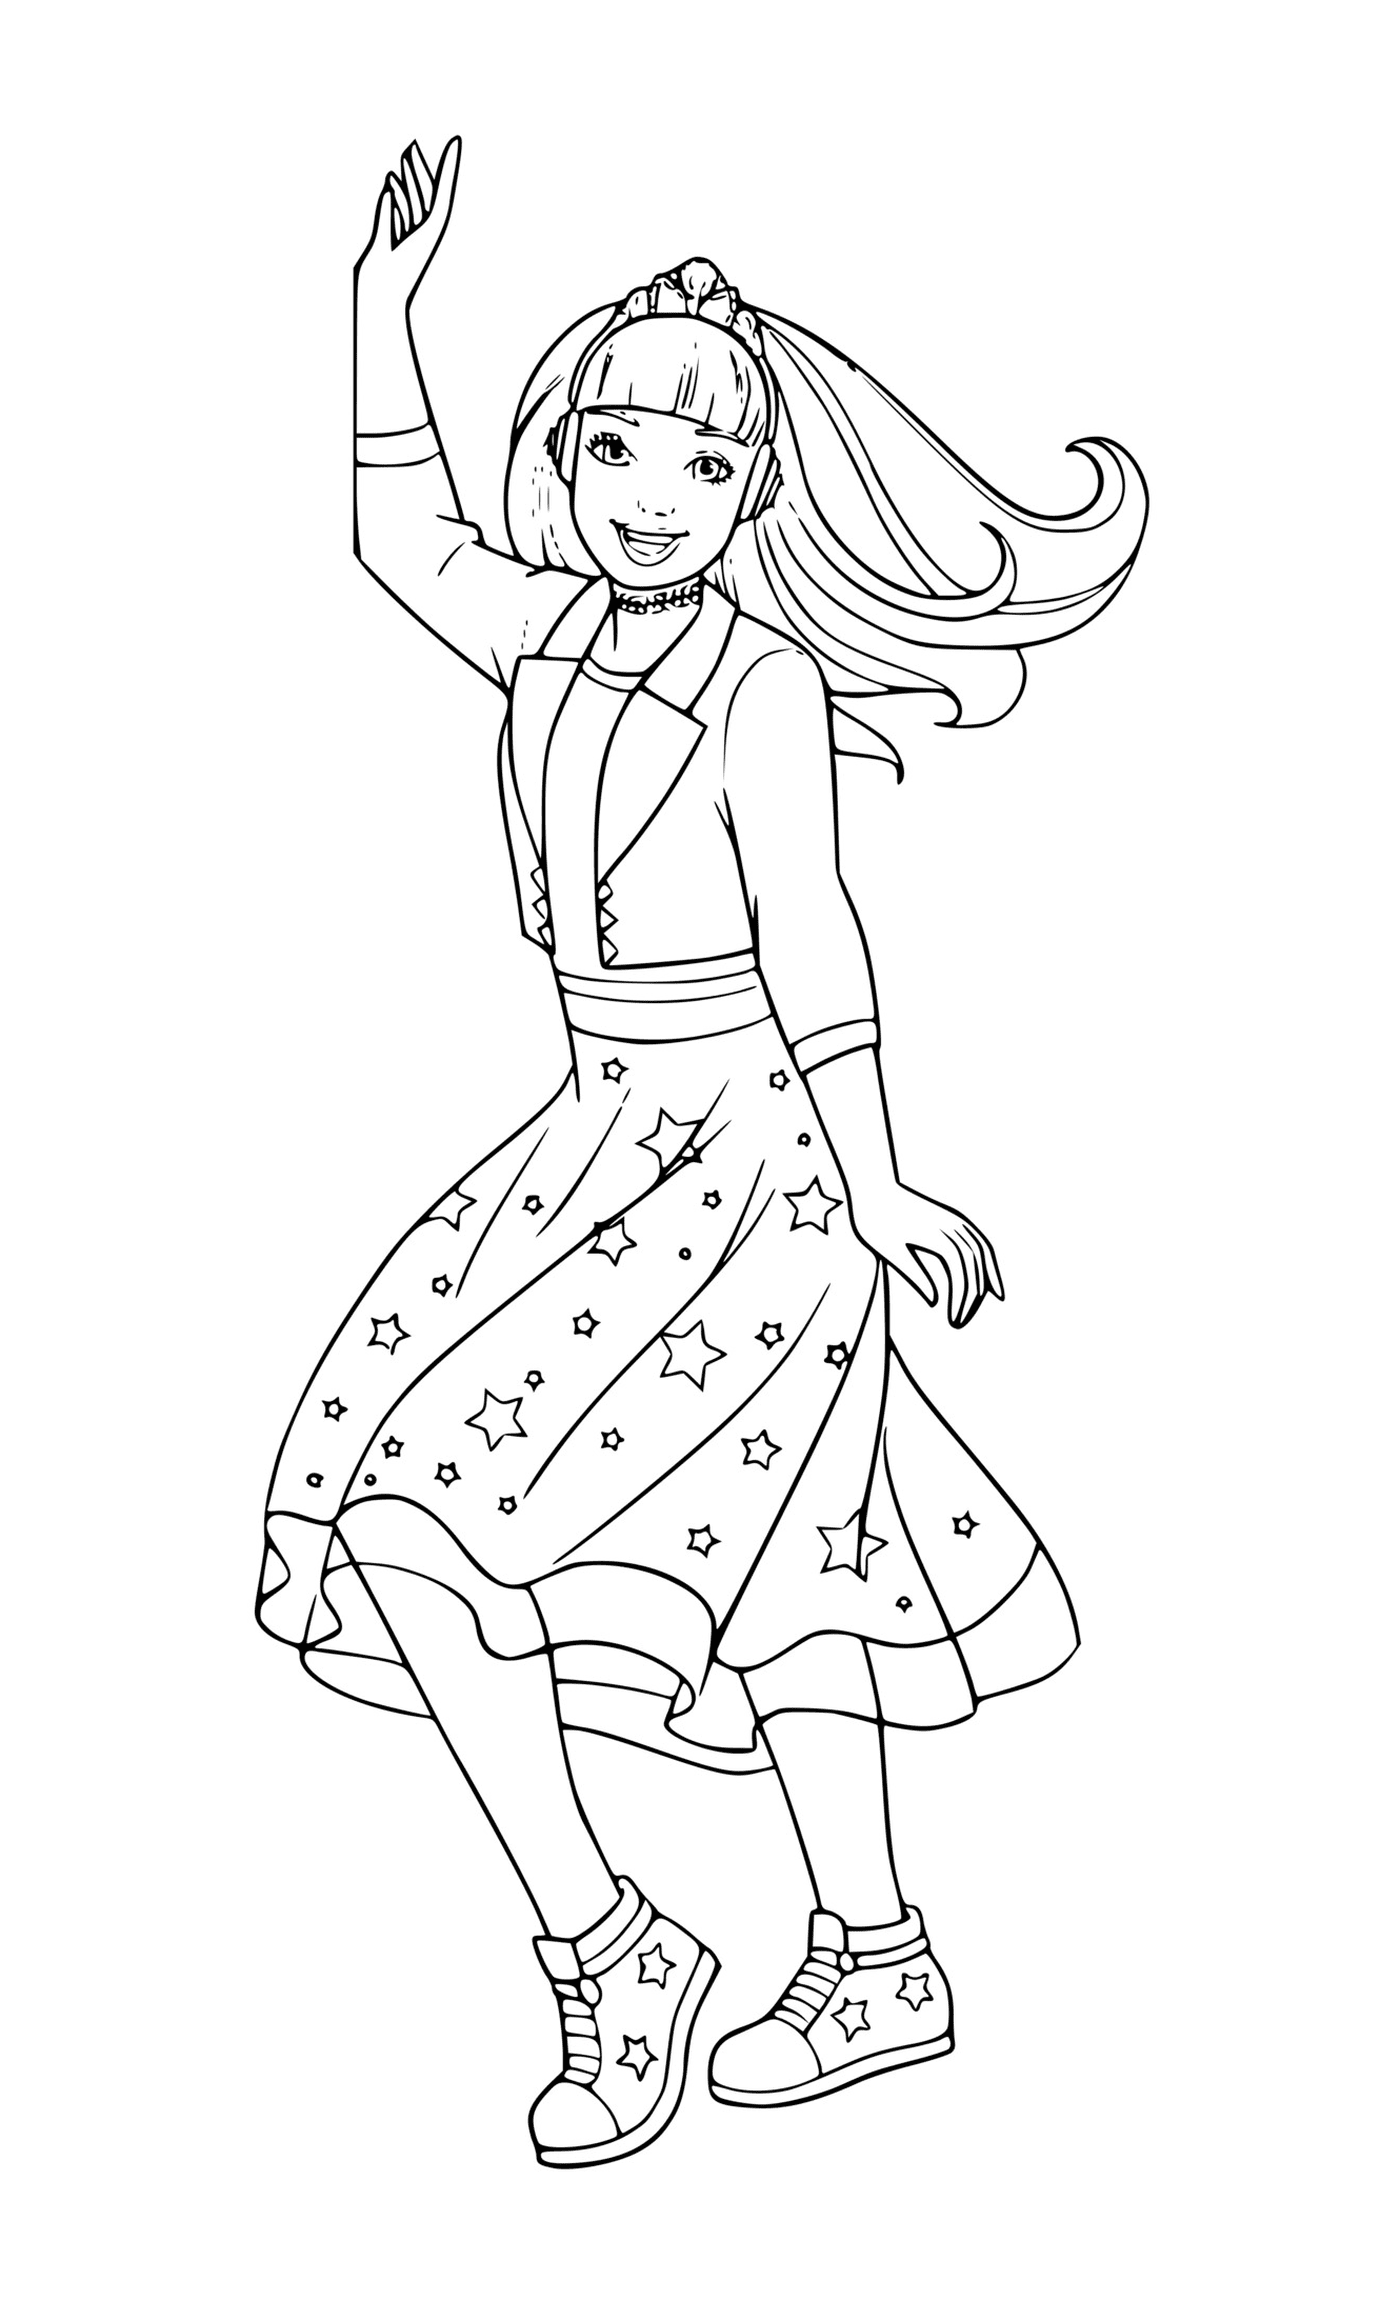  Una ragazza con un vestito stellato che balla 